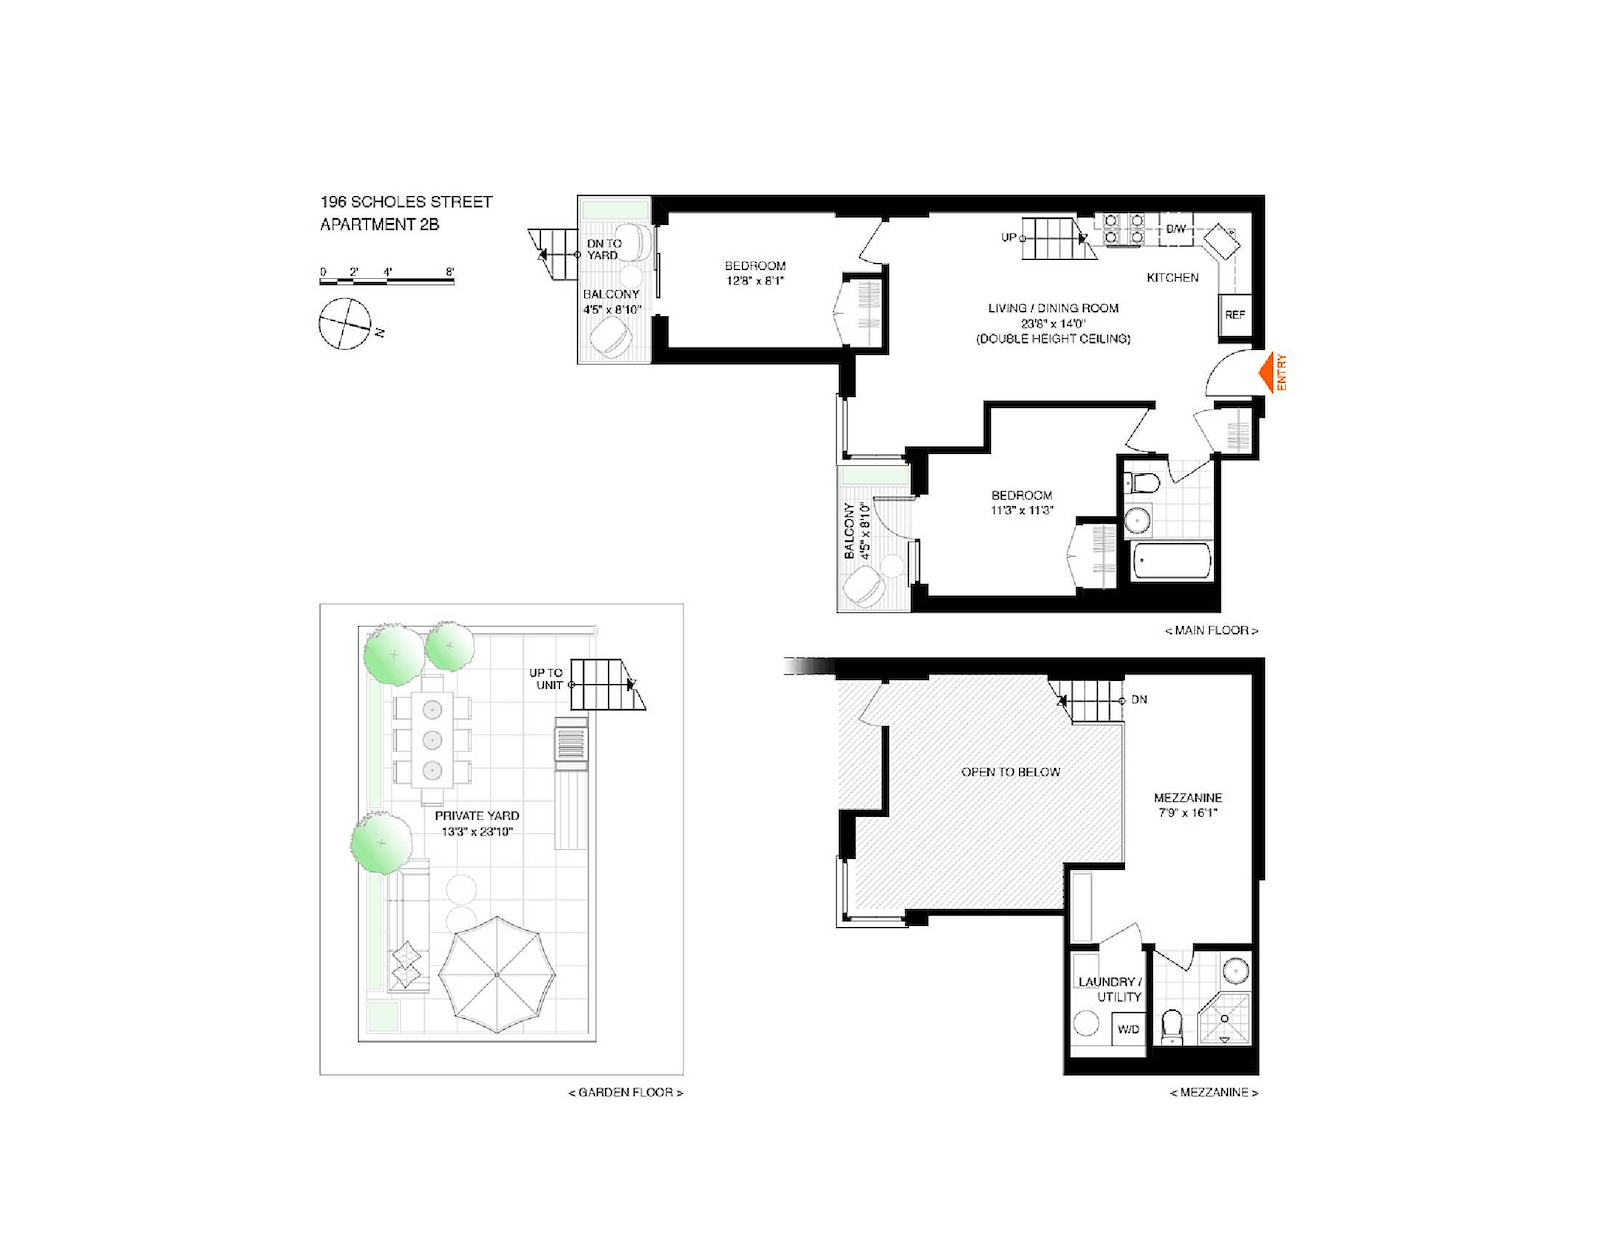 Floorplan for 196 Scholes Street, 2B